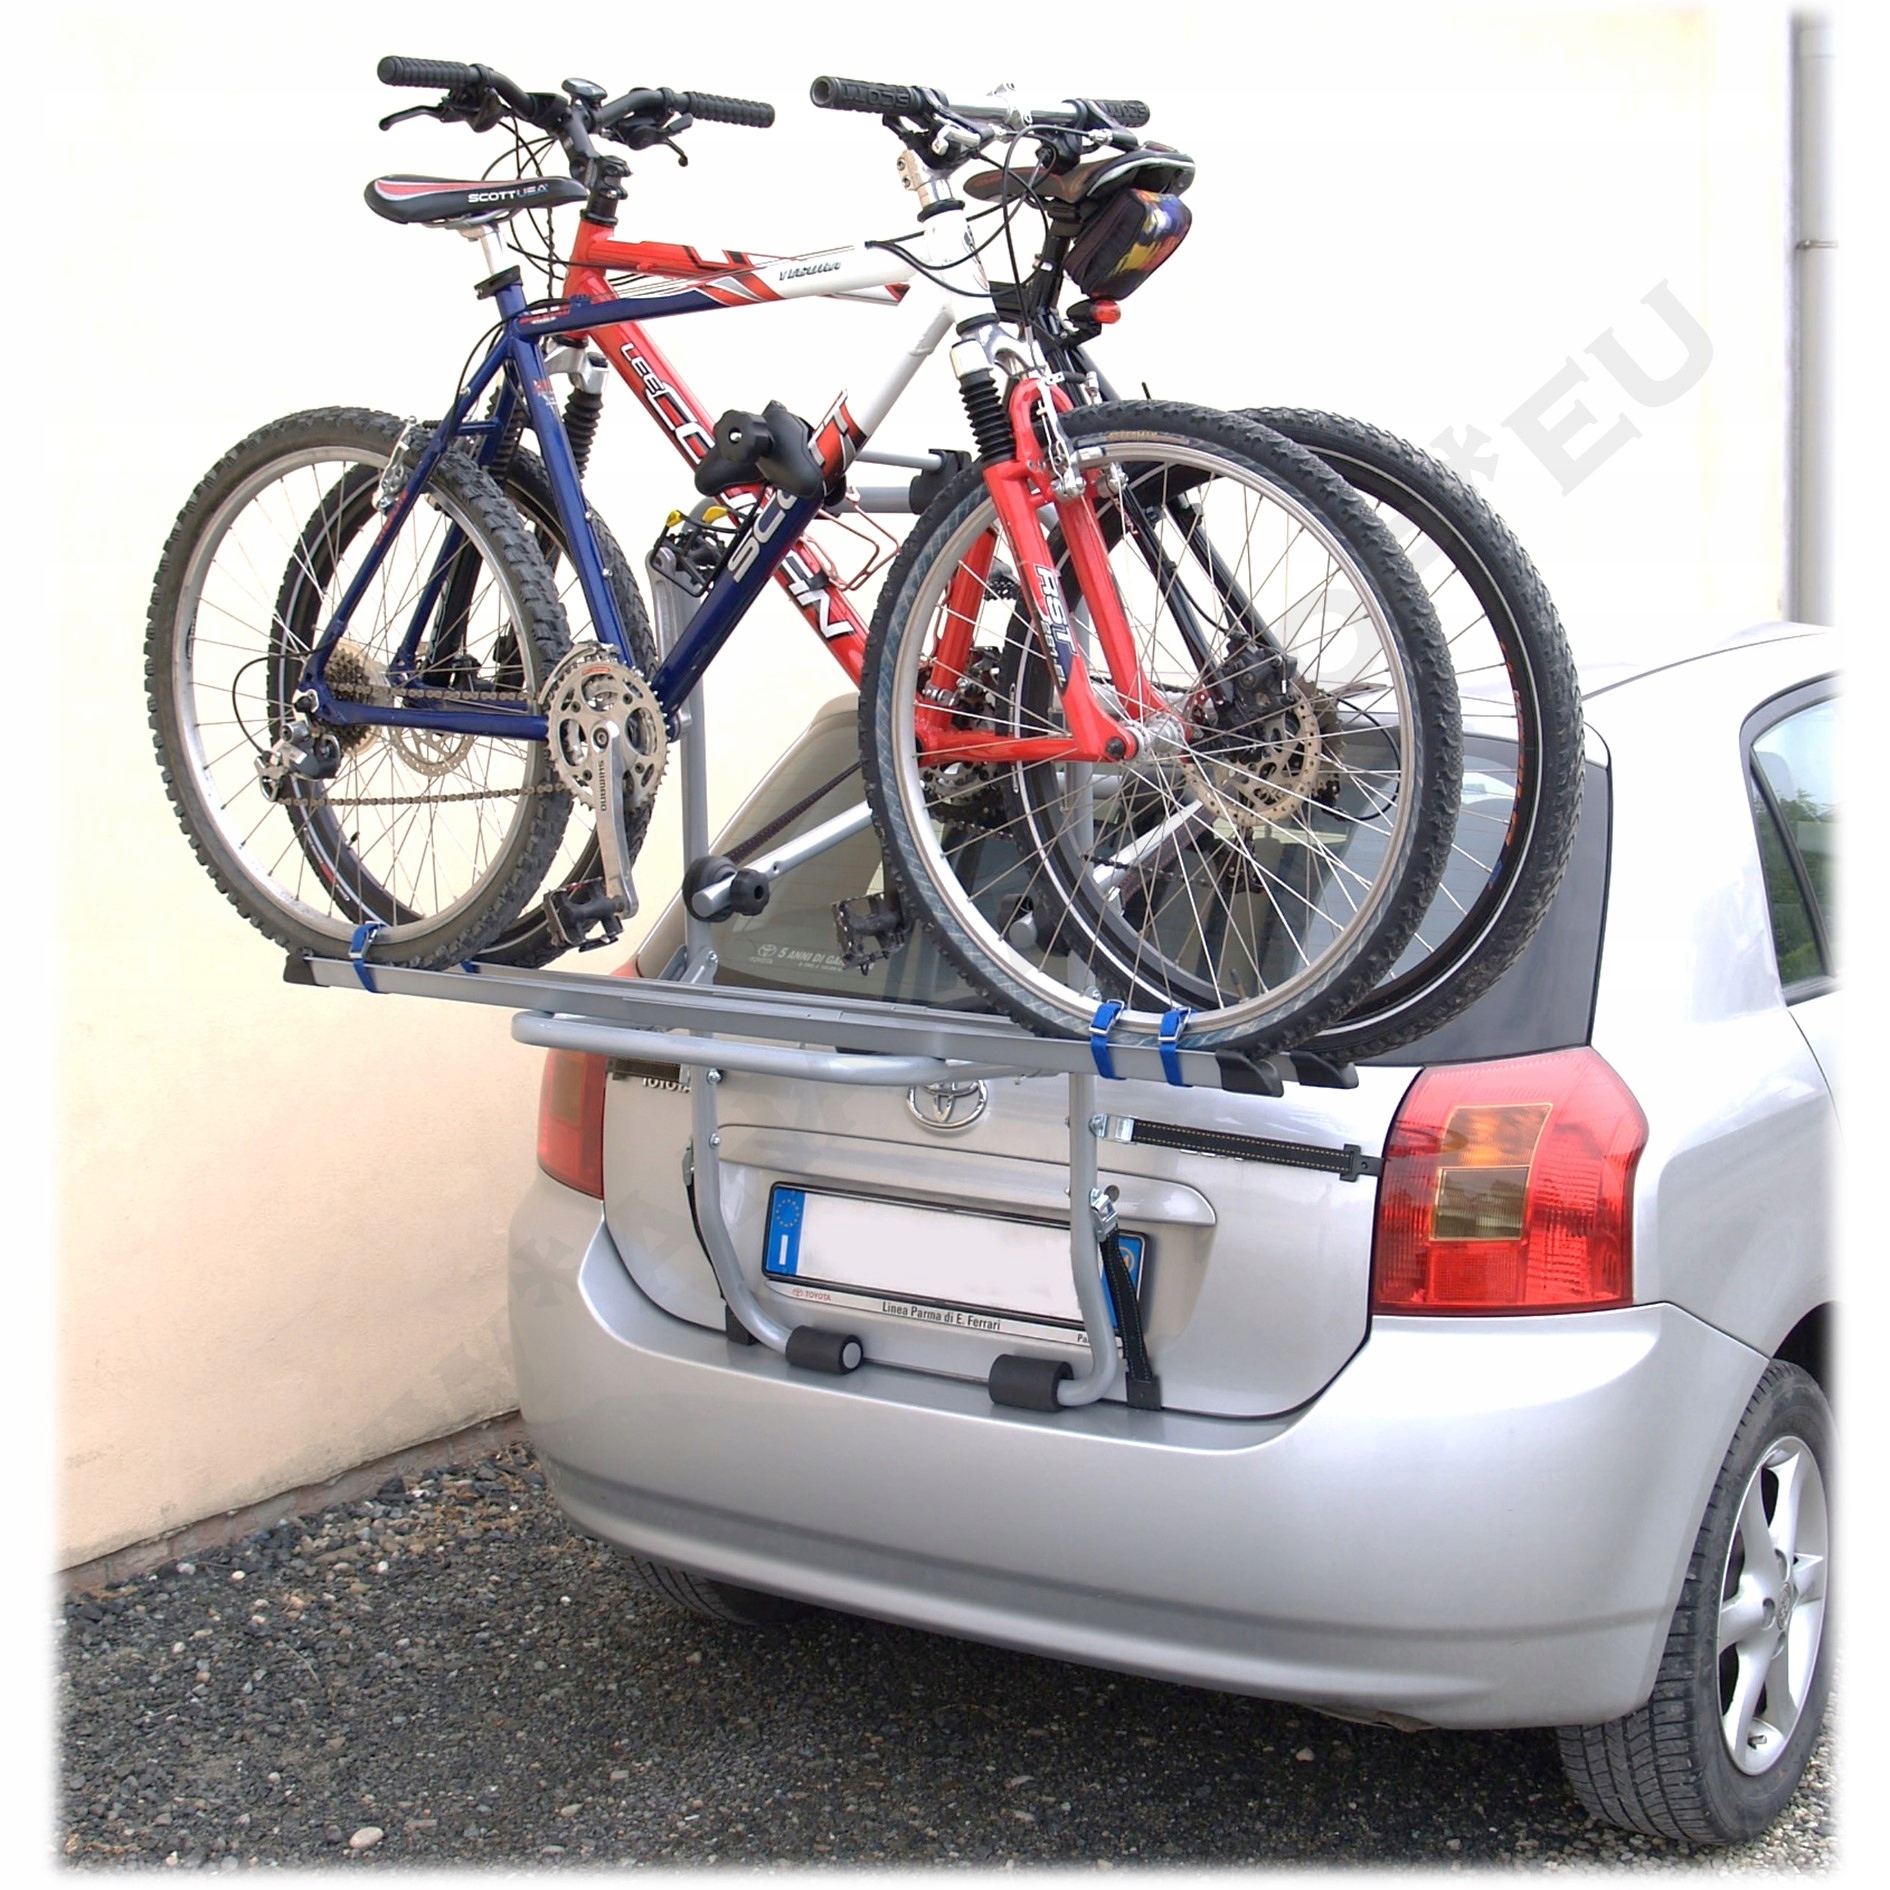 Багажник для велосипеда на заднюю дверь автомобиля: Ошибка 404. Страница не найдена — Объявления на сайте Авито